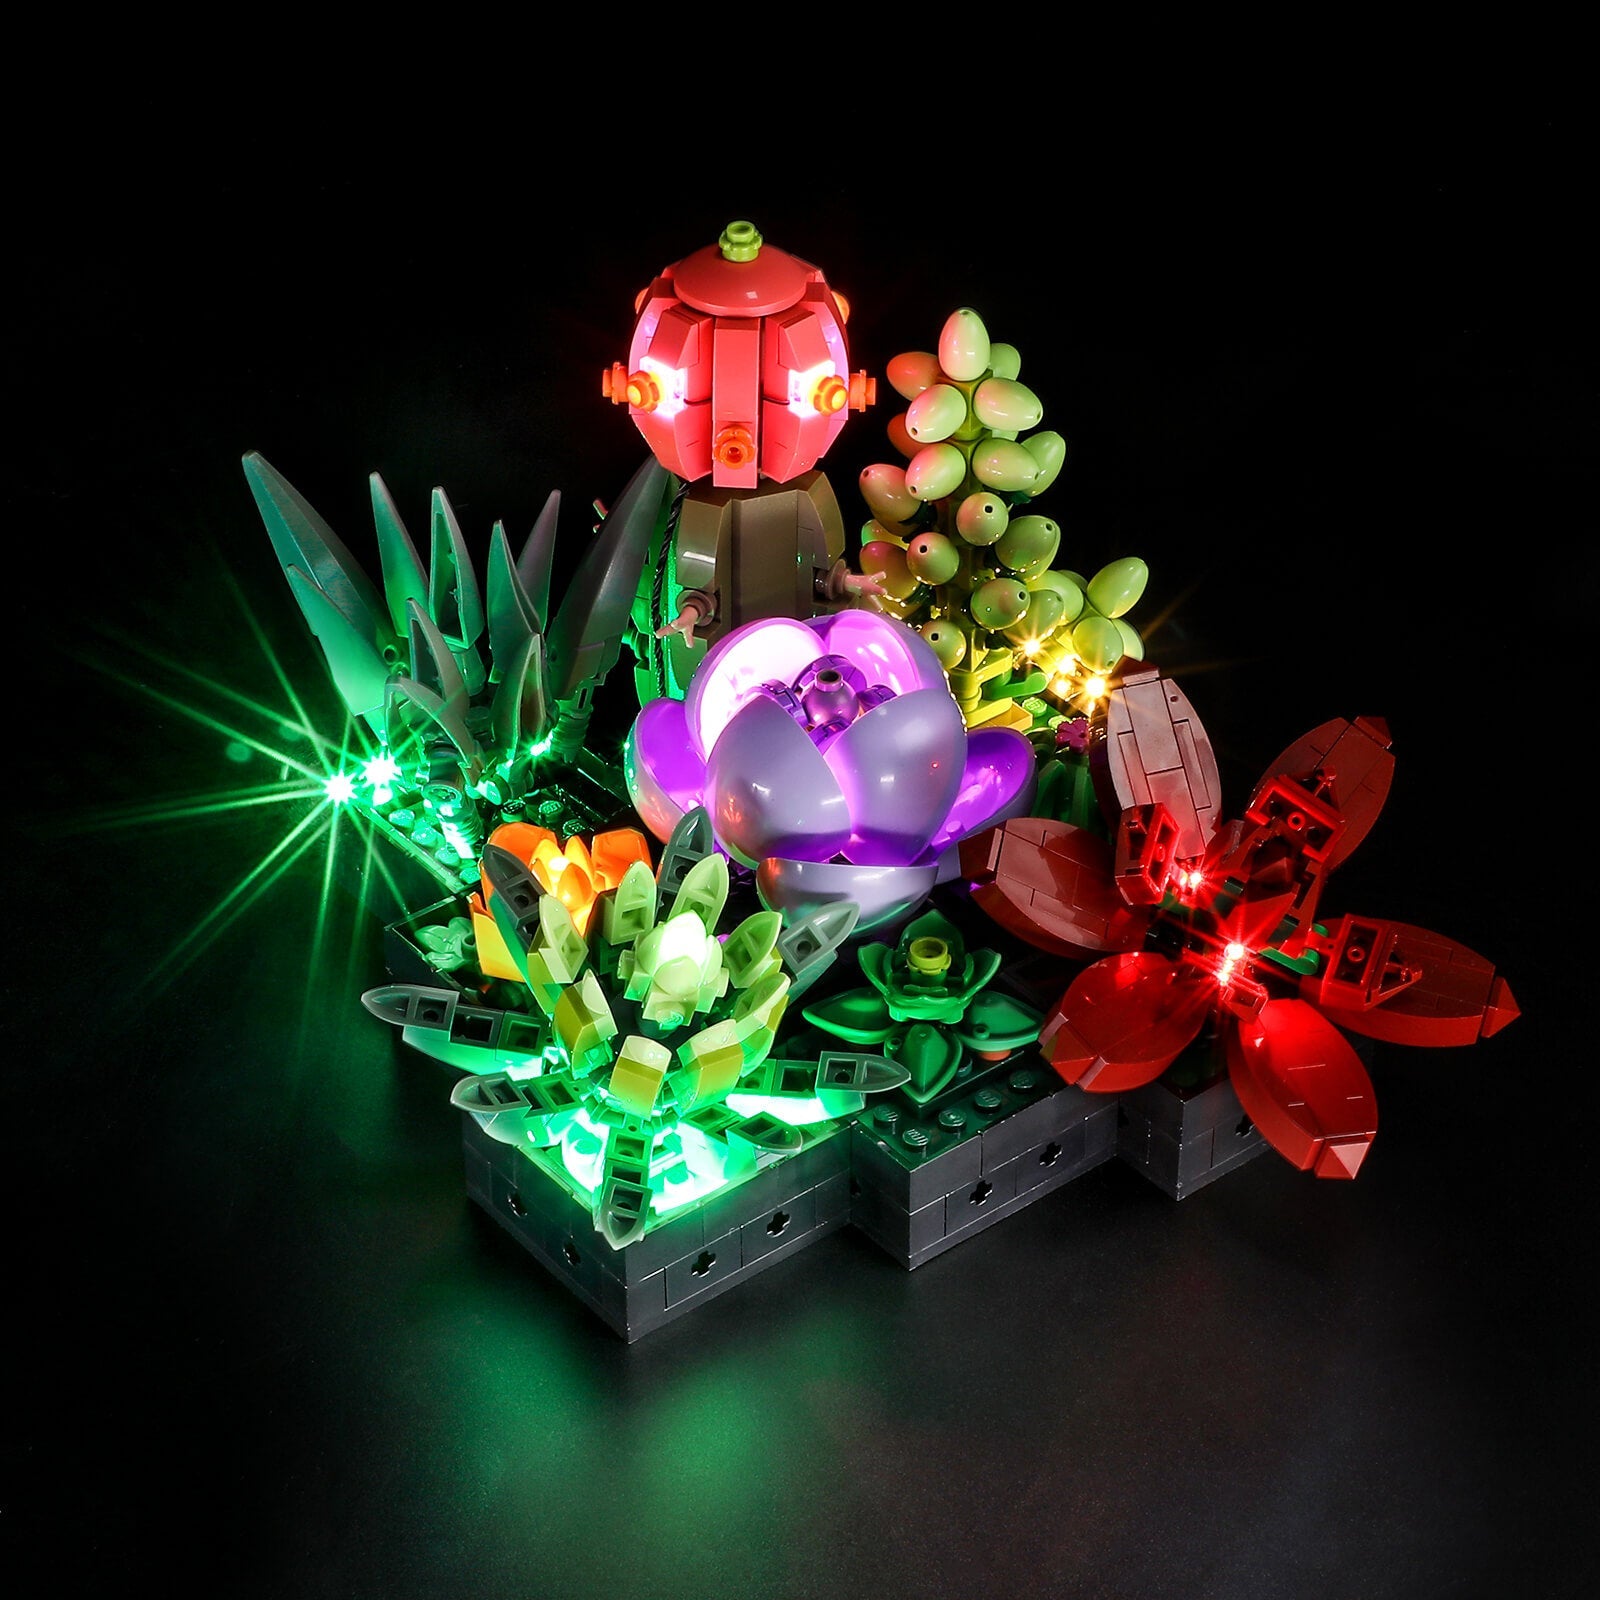 Lightailing Light Kit For Orchid 10311